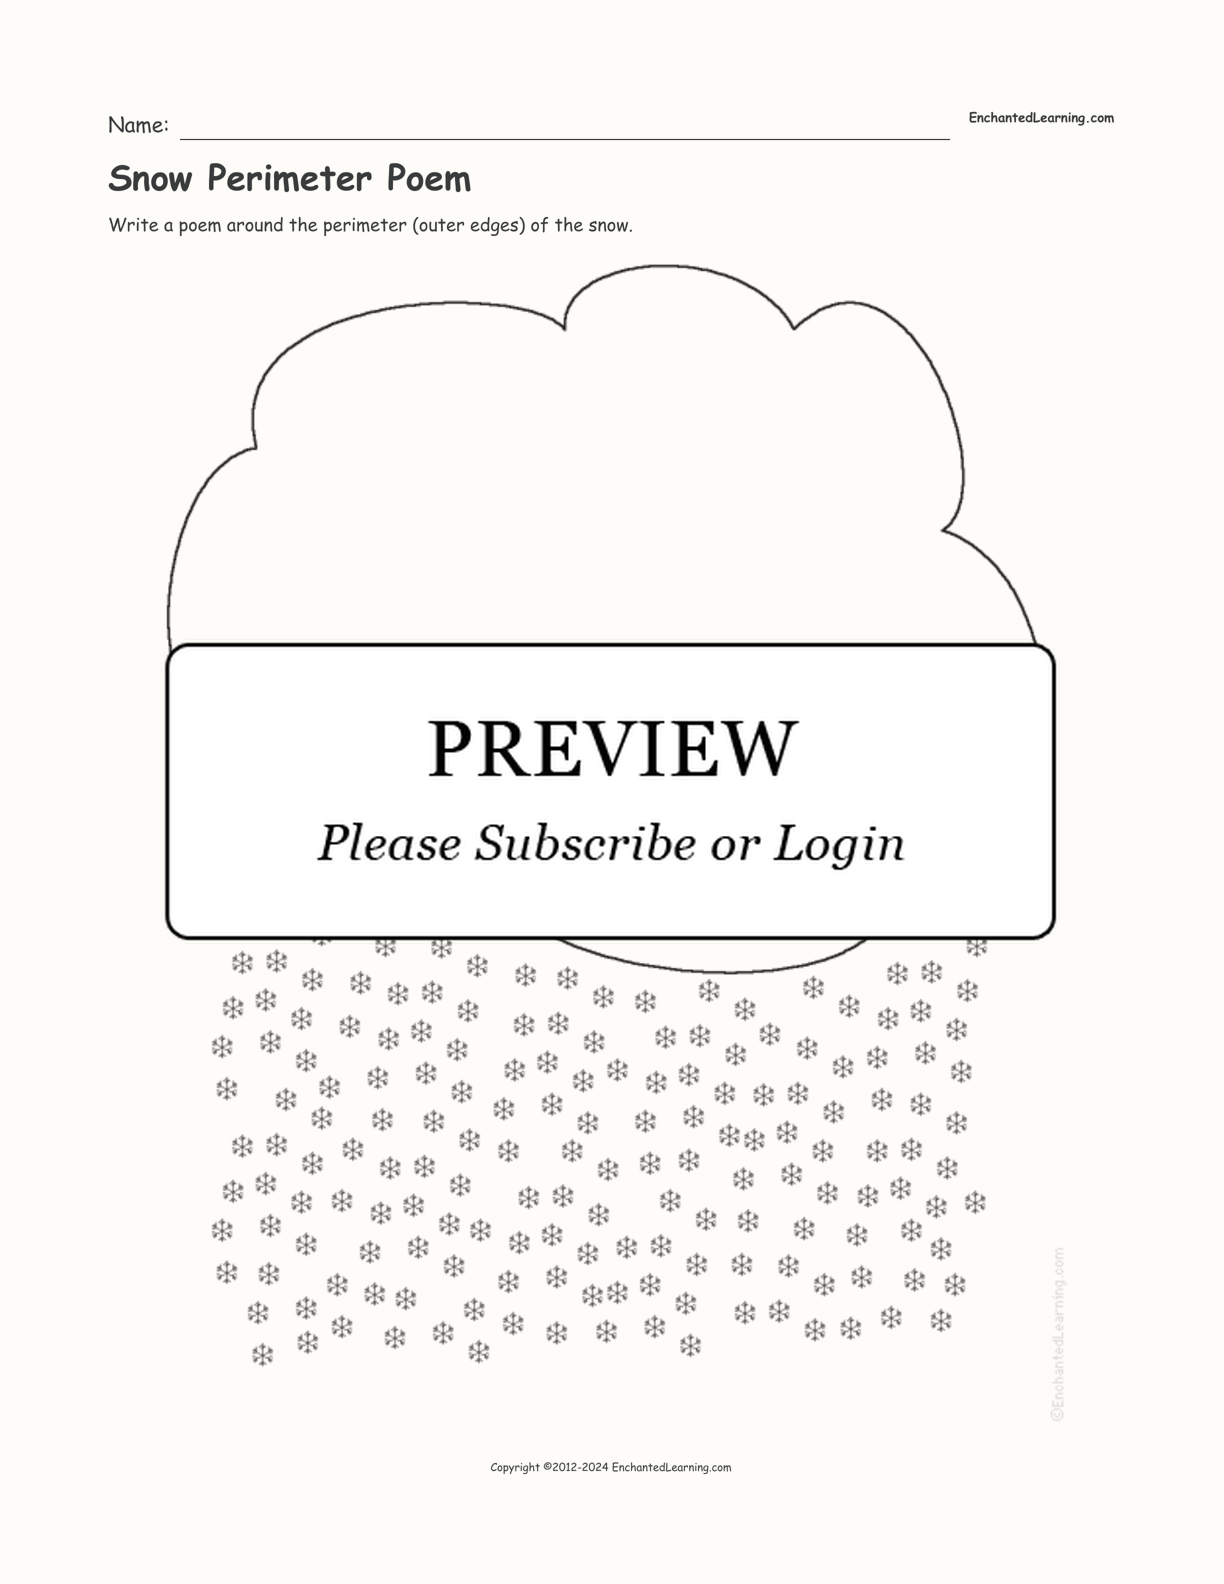 Snow Perimeter Poem interactive worksheet page 1